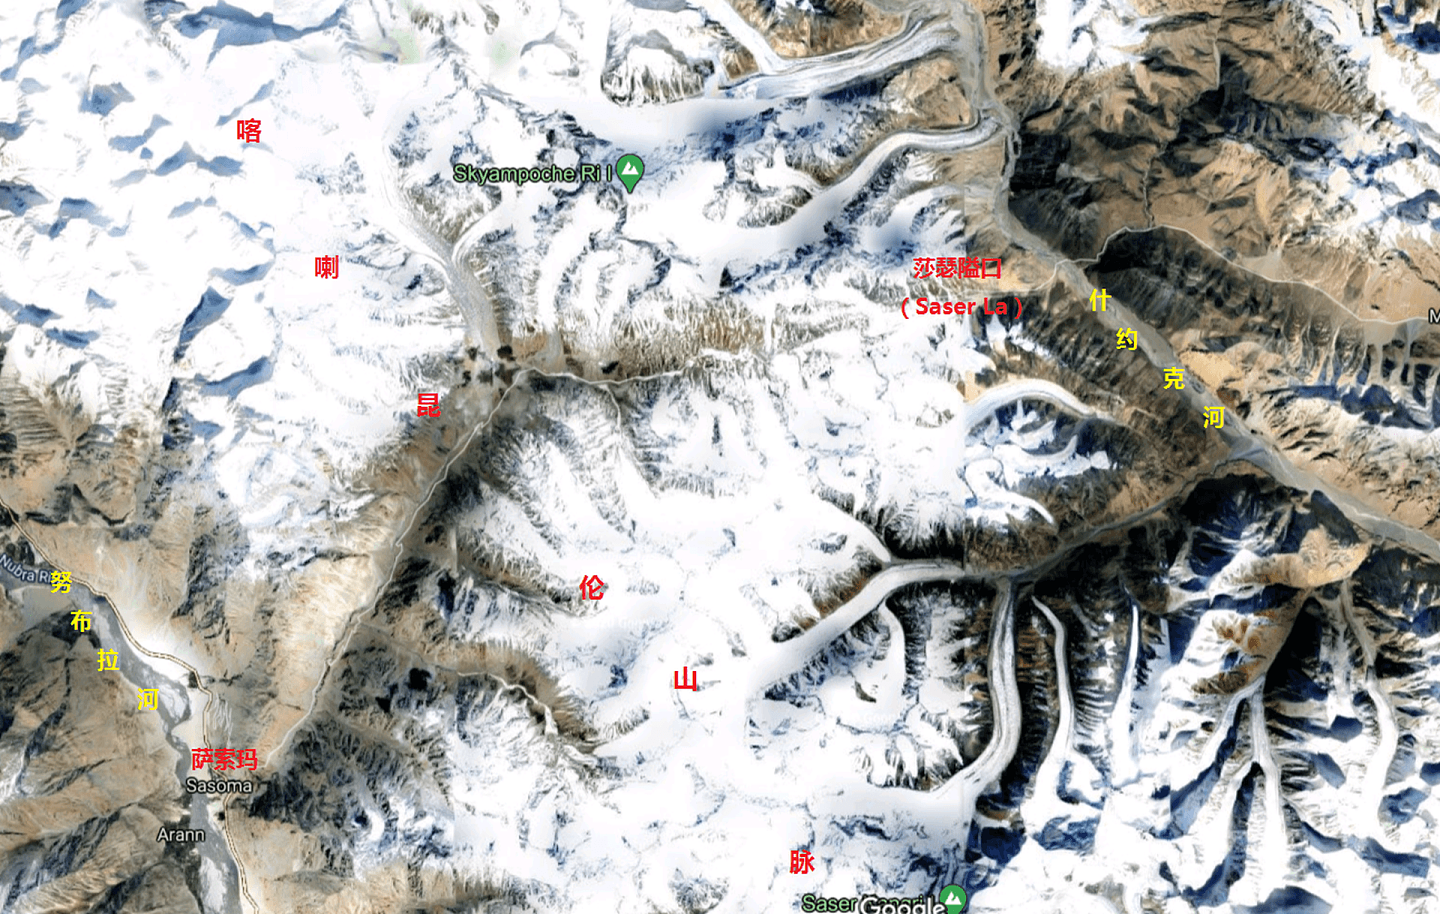 印军从努布拉河河谷的居民点萨索玛开始，沿喀喇昆仑山脉的山谷道路修筑了一条可以运行越野车辆的野战公路，但公路东段受季节影响。（谷歌地图截图）